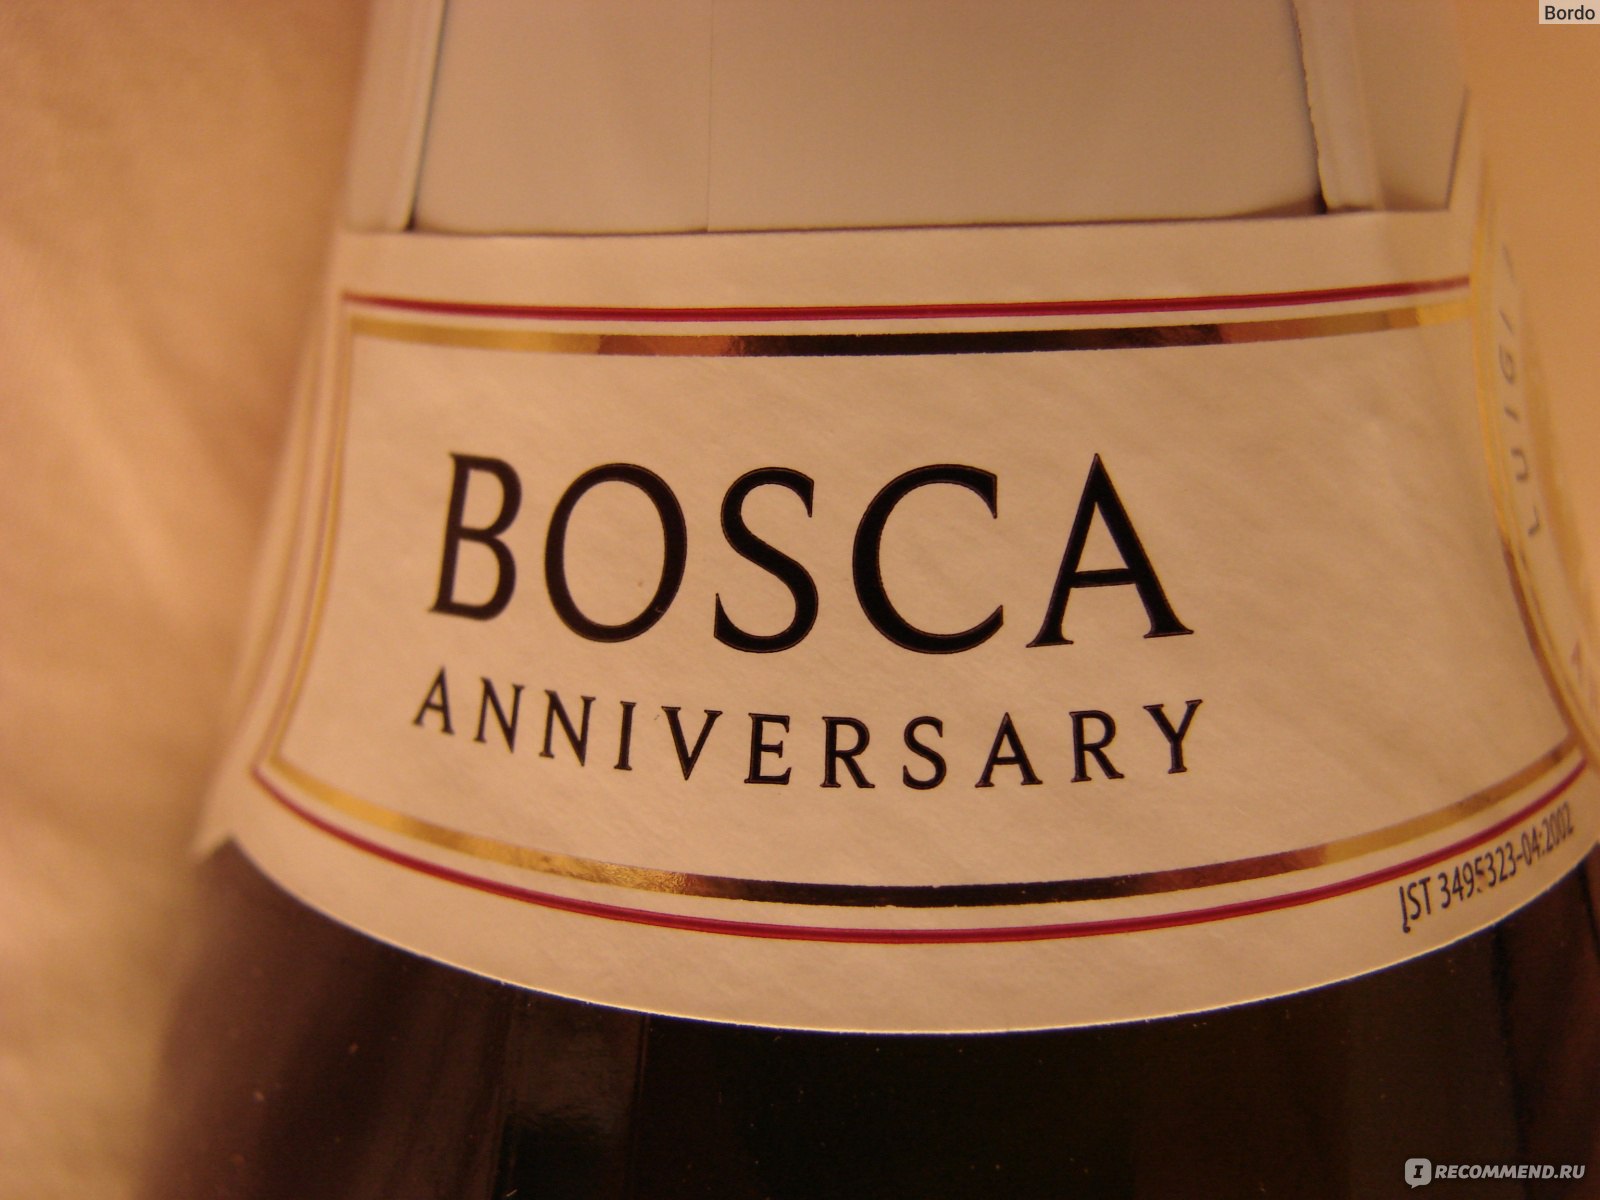 Шампанское боско безалкогольное. Винный напиток "Bosca" Rose. Боско белое полусладкое. Боска Анниверсари. Боска шампанское розовое.